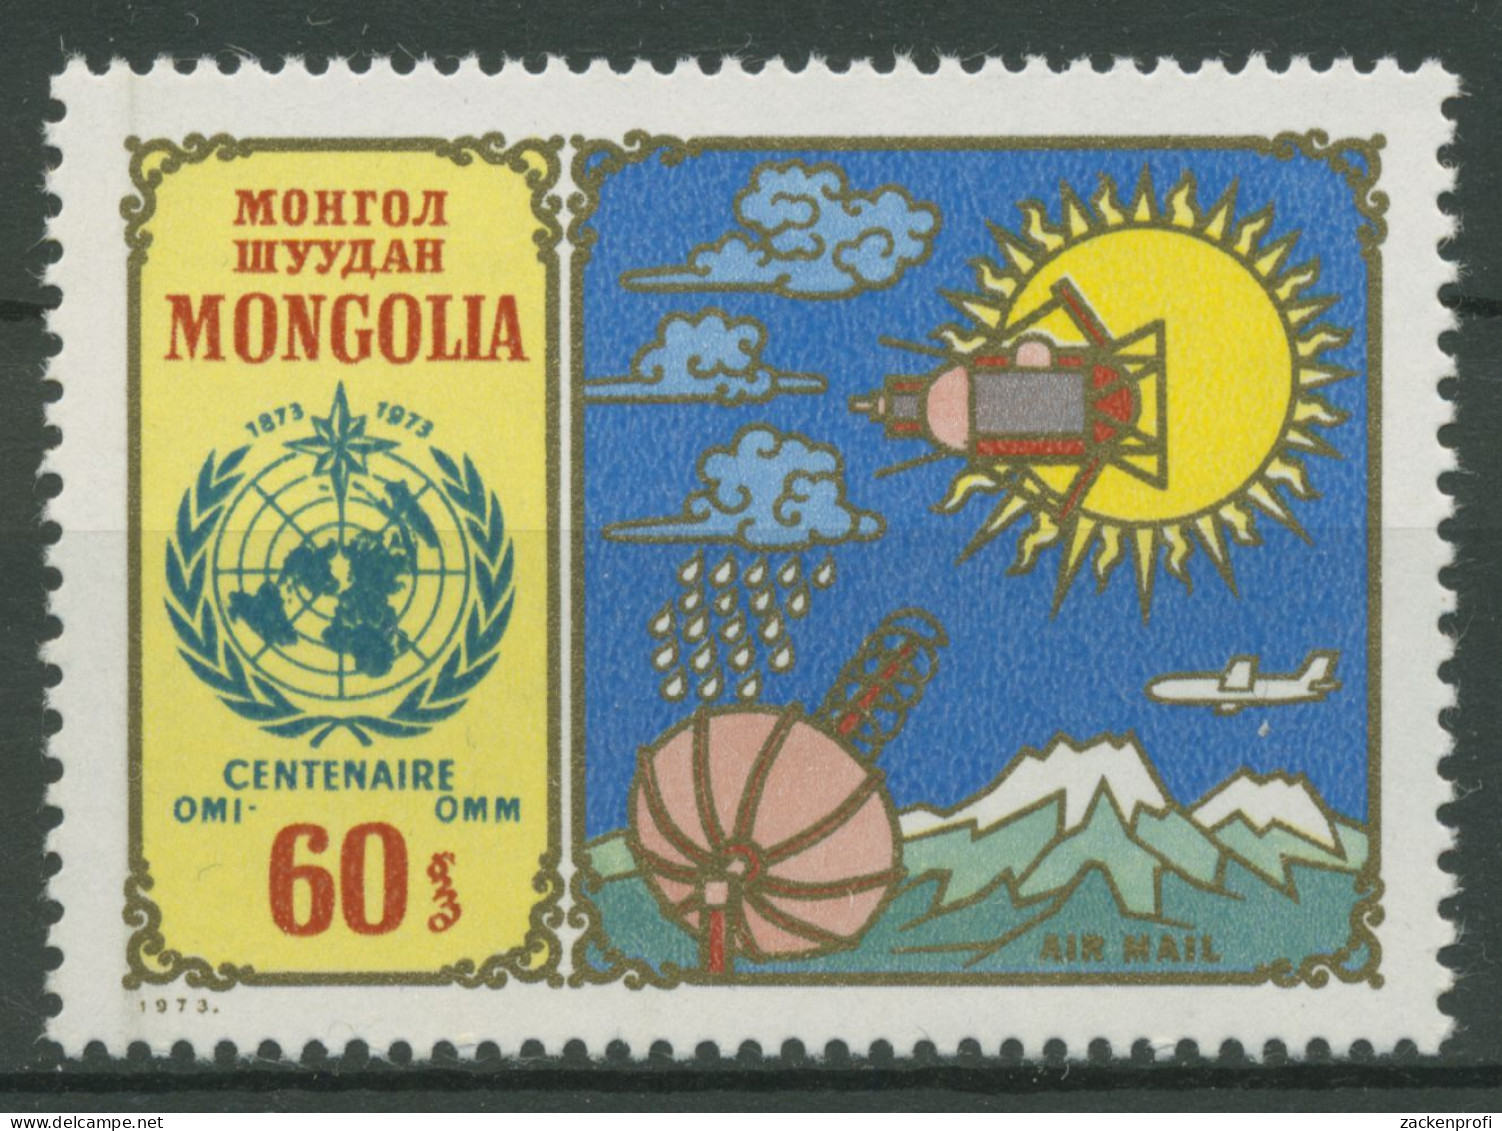 Mongolei 1973 Meteorologische Zusammenarbeit 773 Postfrisch - Mongolei